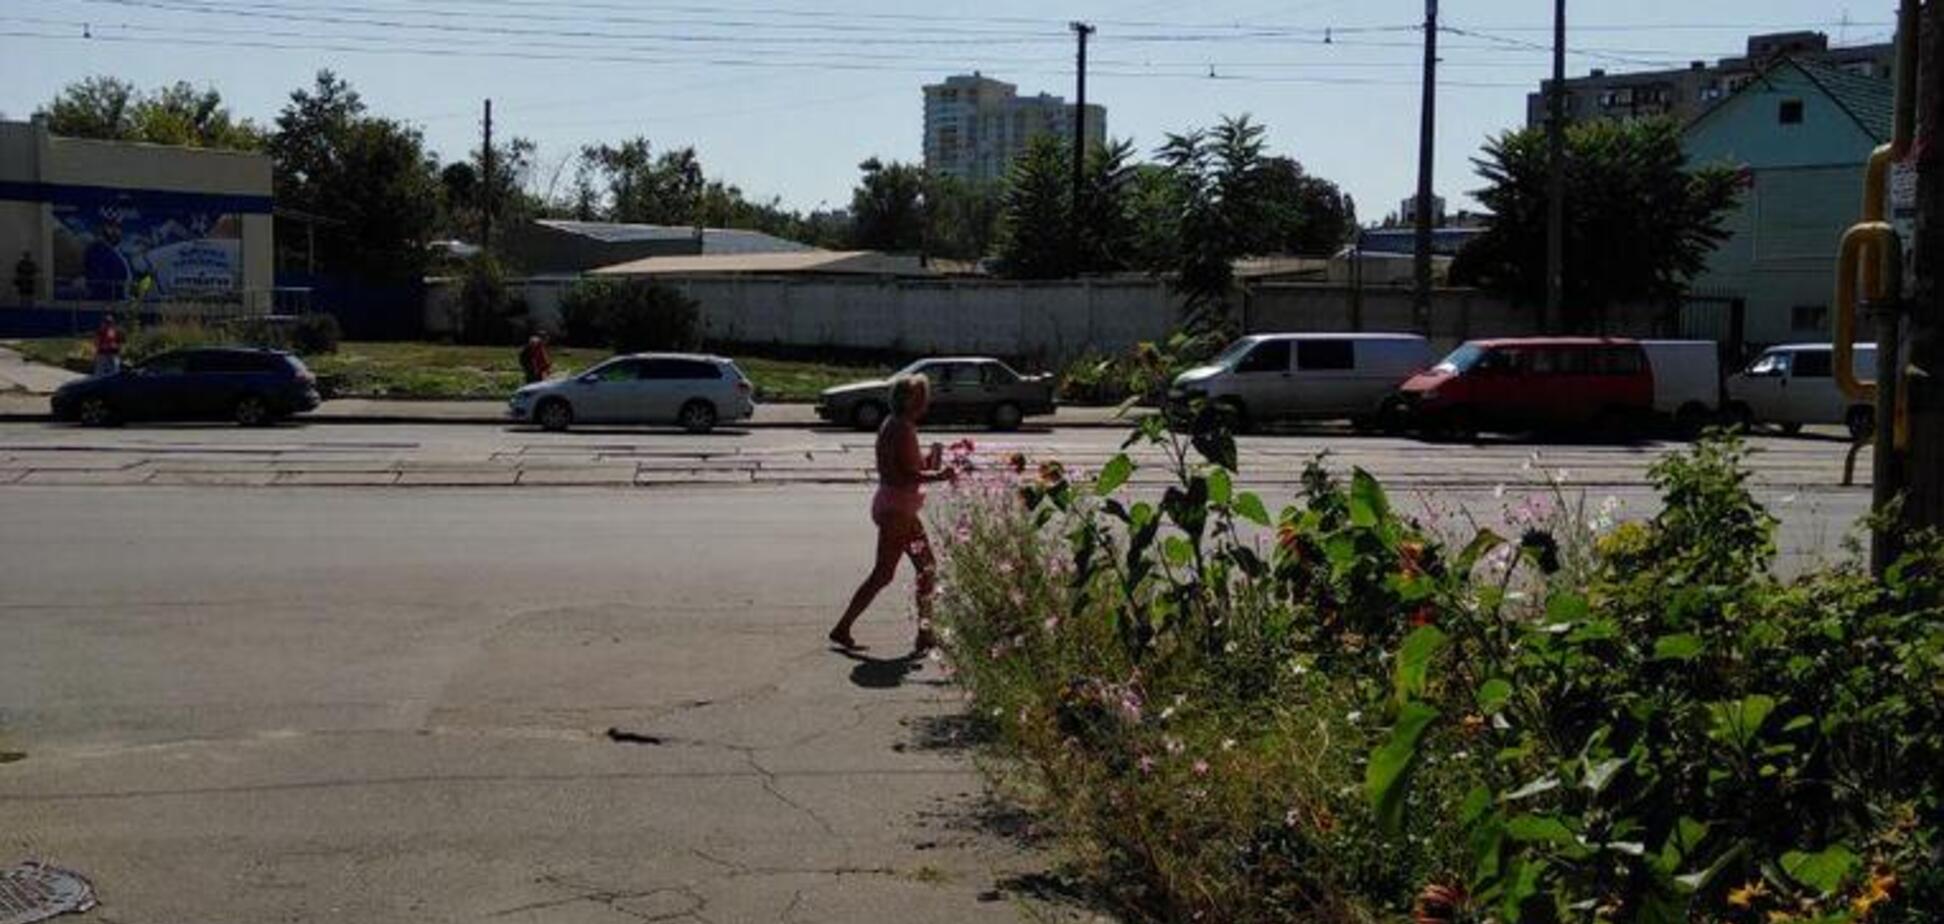 Йшла і танцювала: в Києві засікли голу бабусю на вулиці. Відео 18+